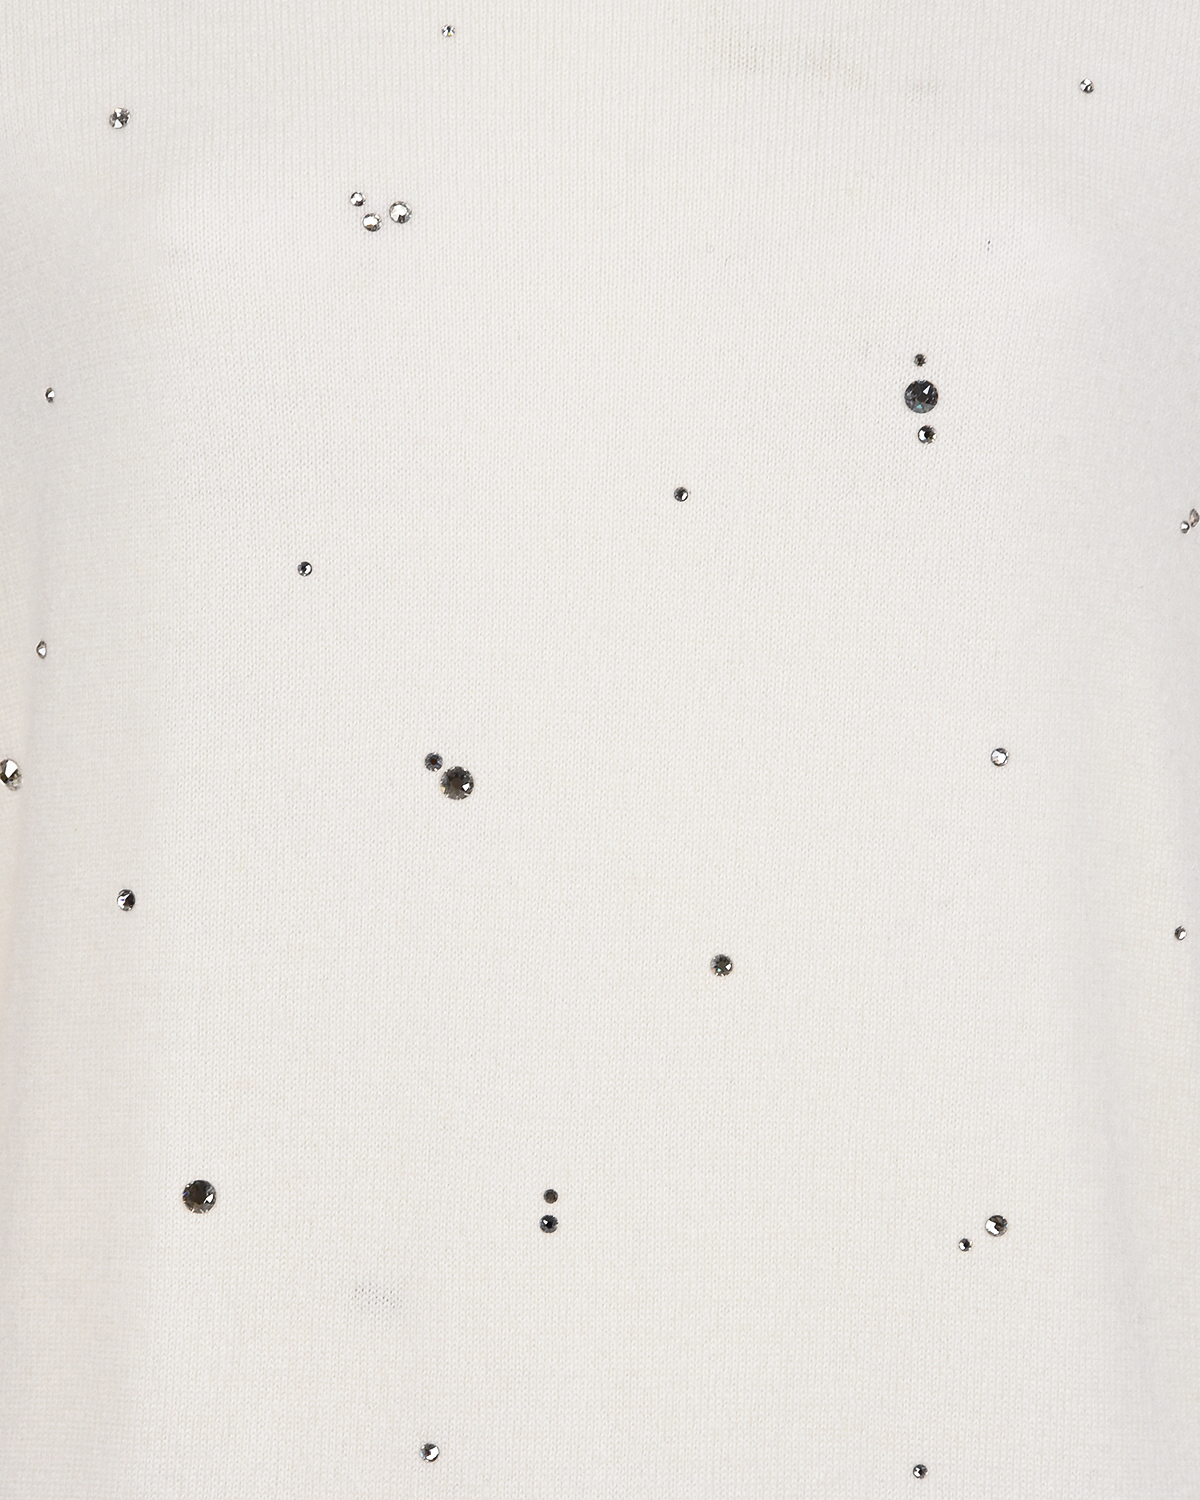 Джемпер из кашемира со стразами Swarovski William Sharp, размер 42, цвет белый - фото 3